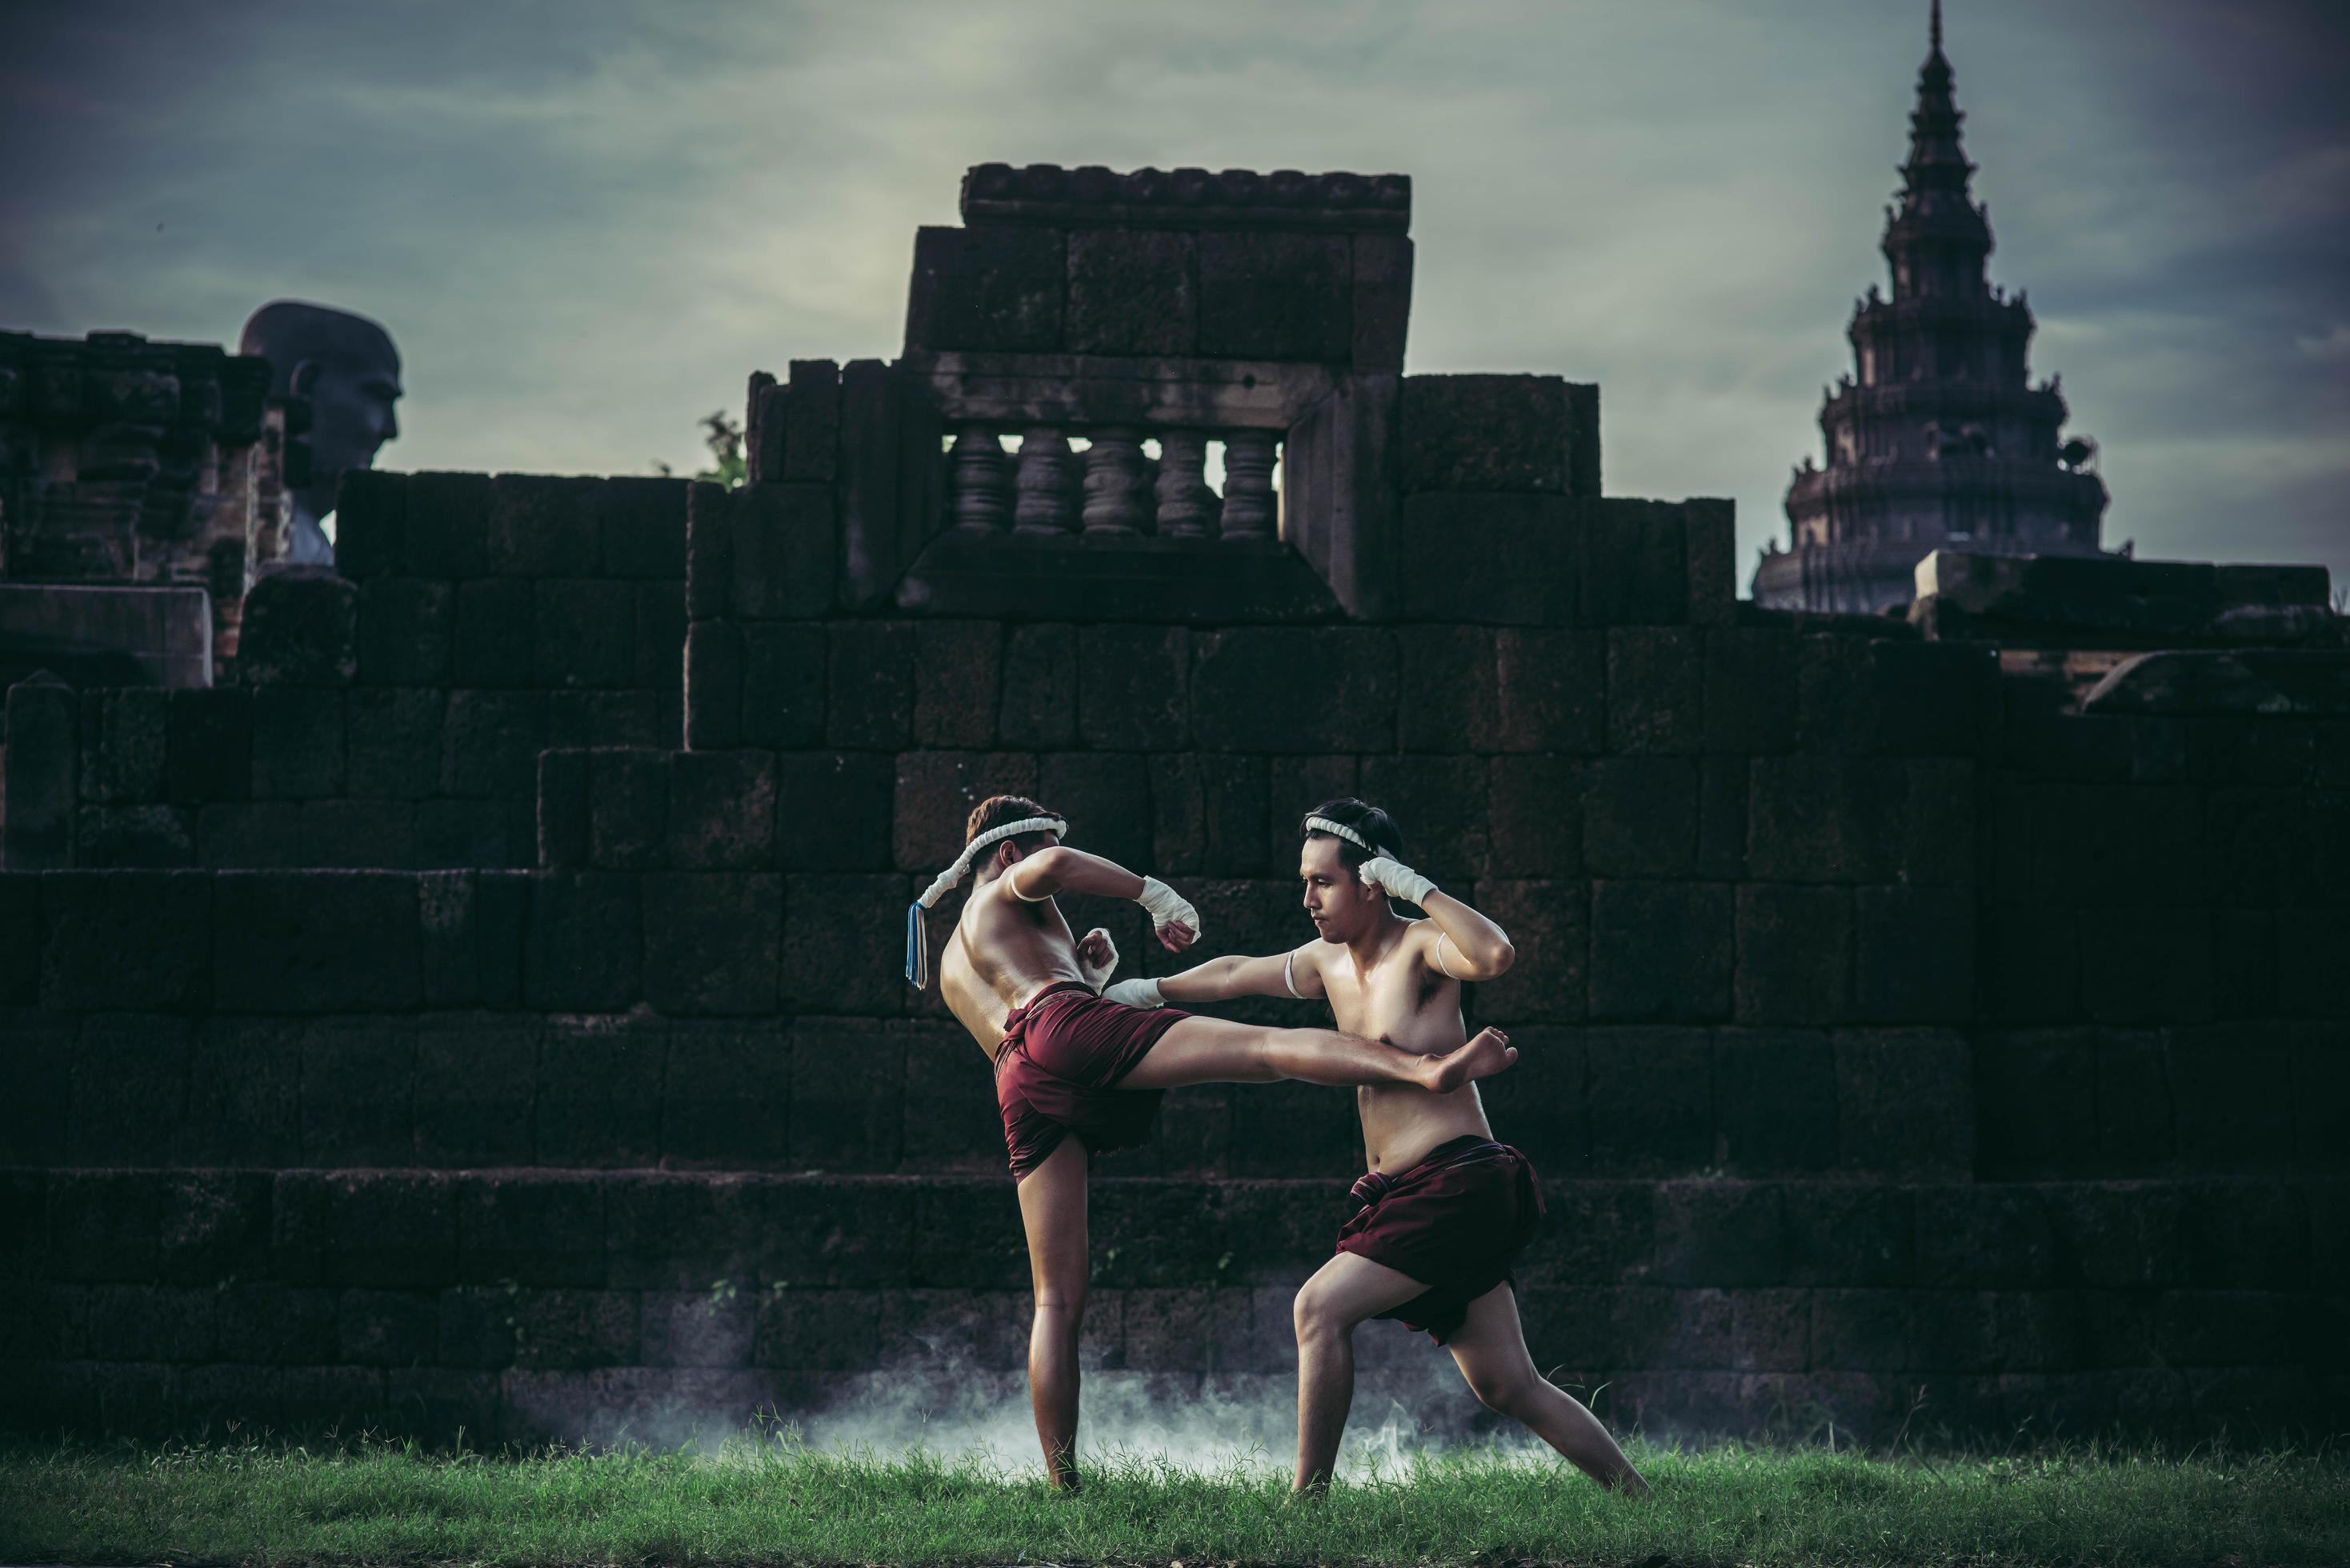 två boxare slåss med kampsporten muay thai. foto